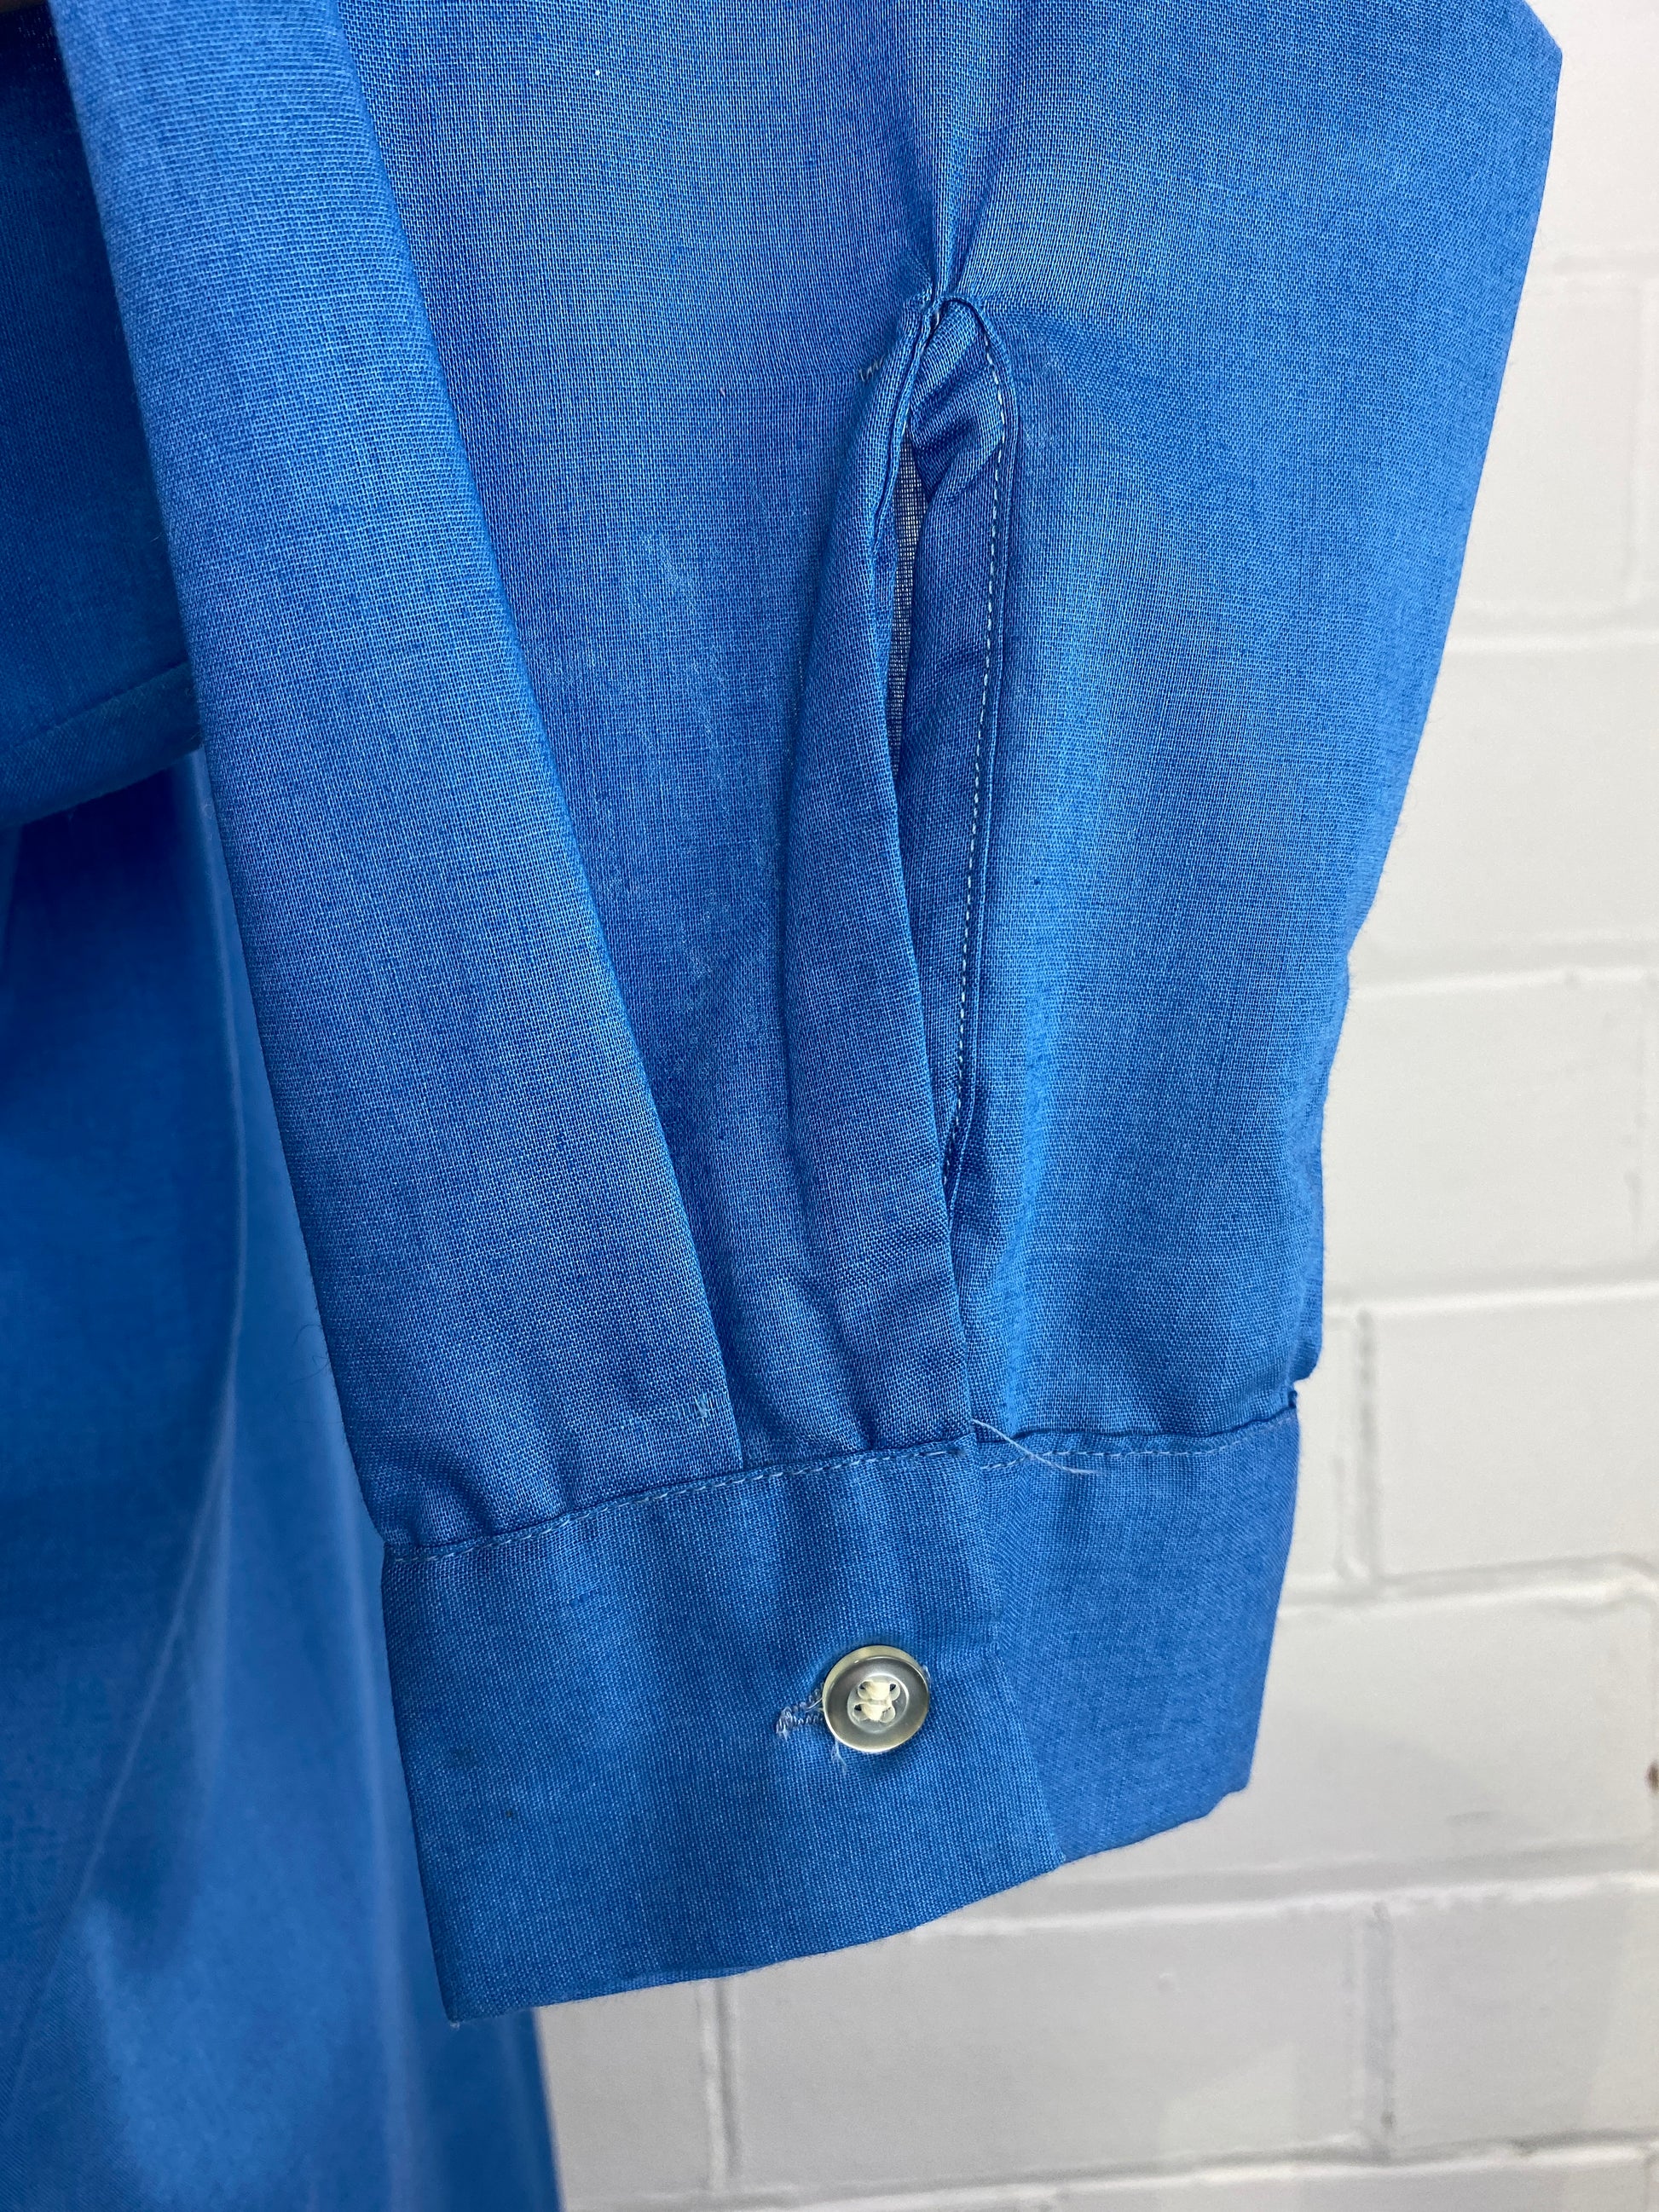 Vintage 80s Men's Blue Button-Up Shirt, Large